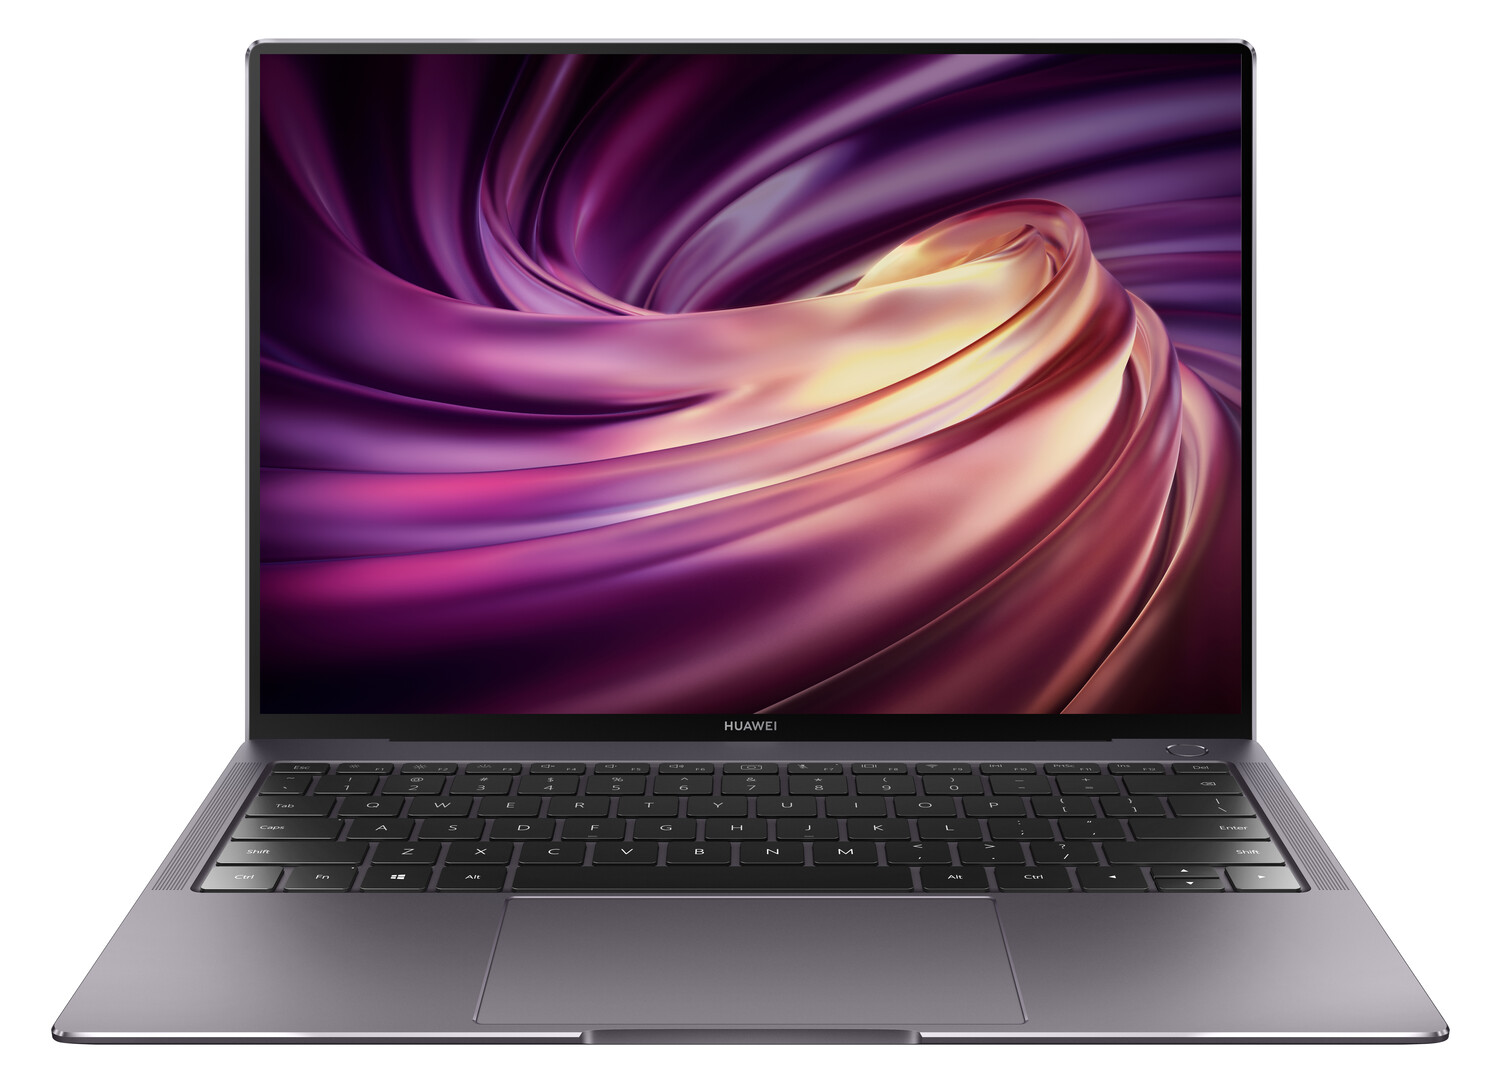 Huawei MateBook X Pro Series - Notebookcheck.net External Reviews